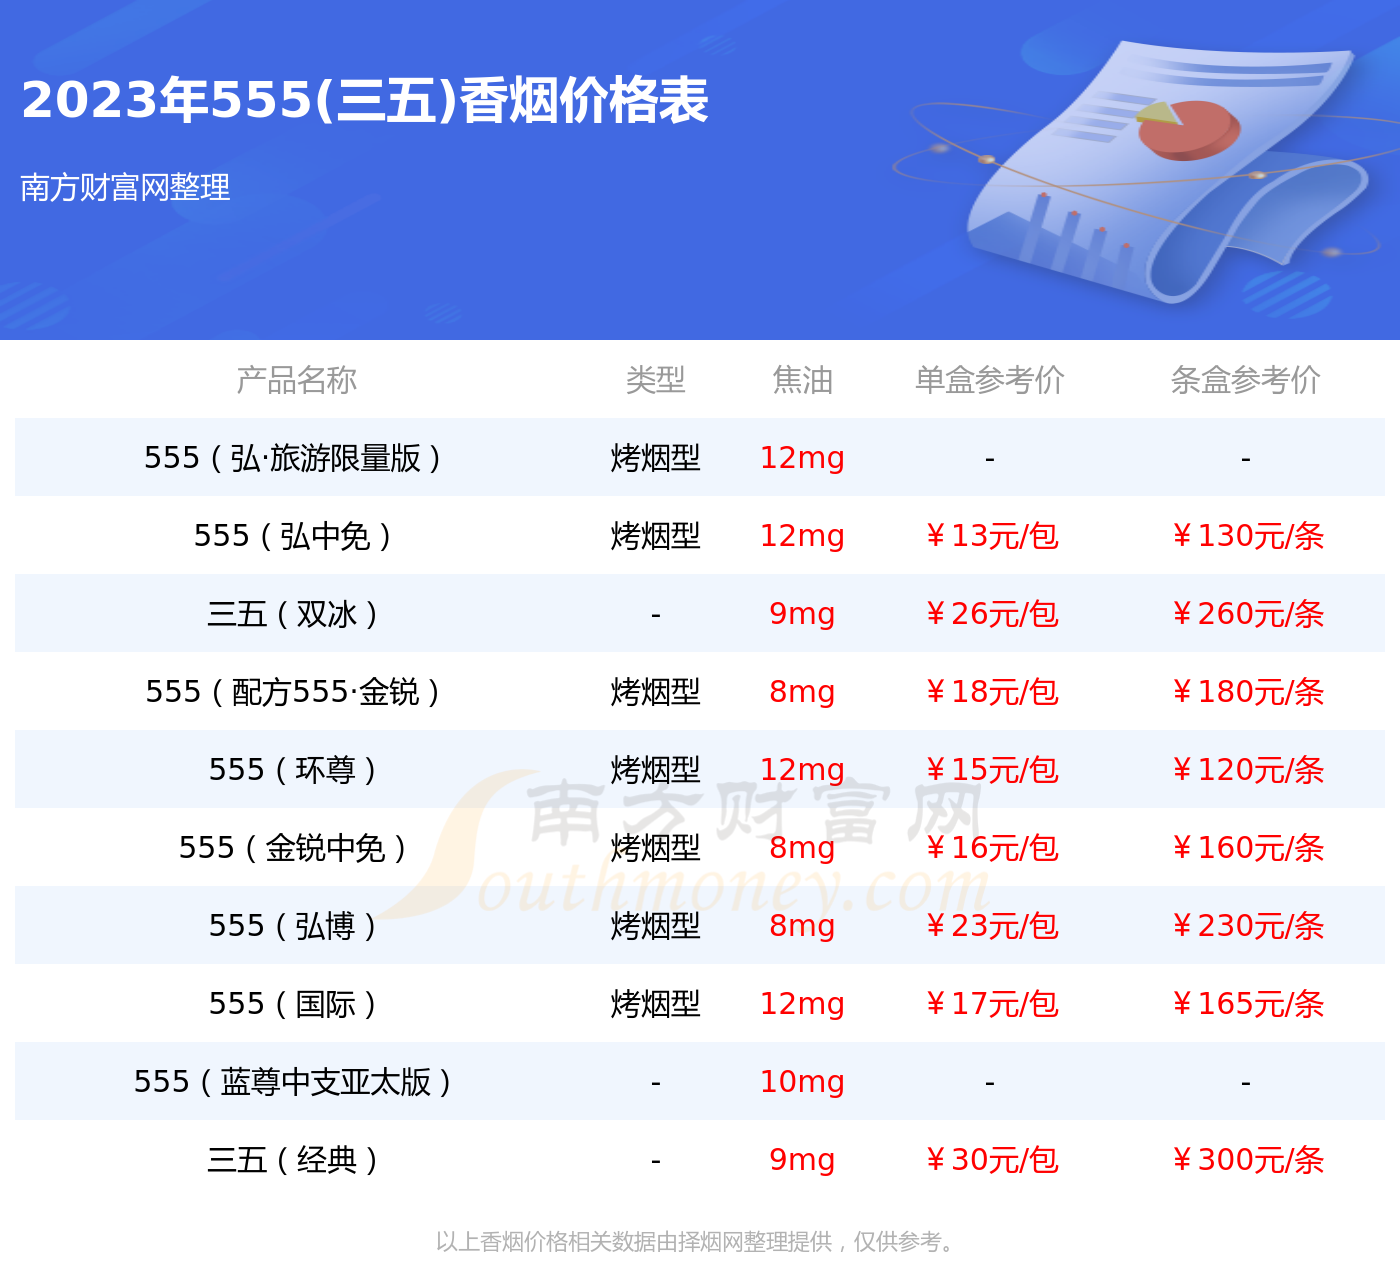 2023年555越南版金免税12支香烟价格表一览